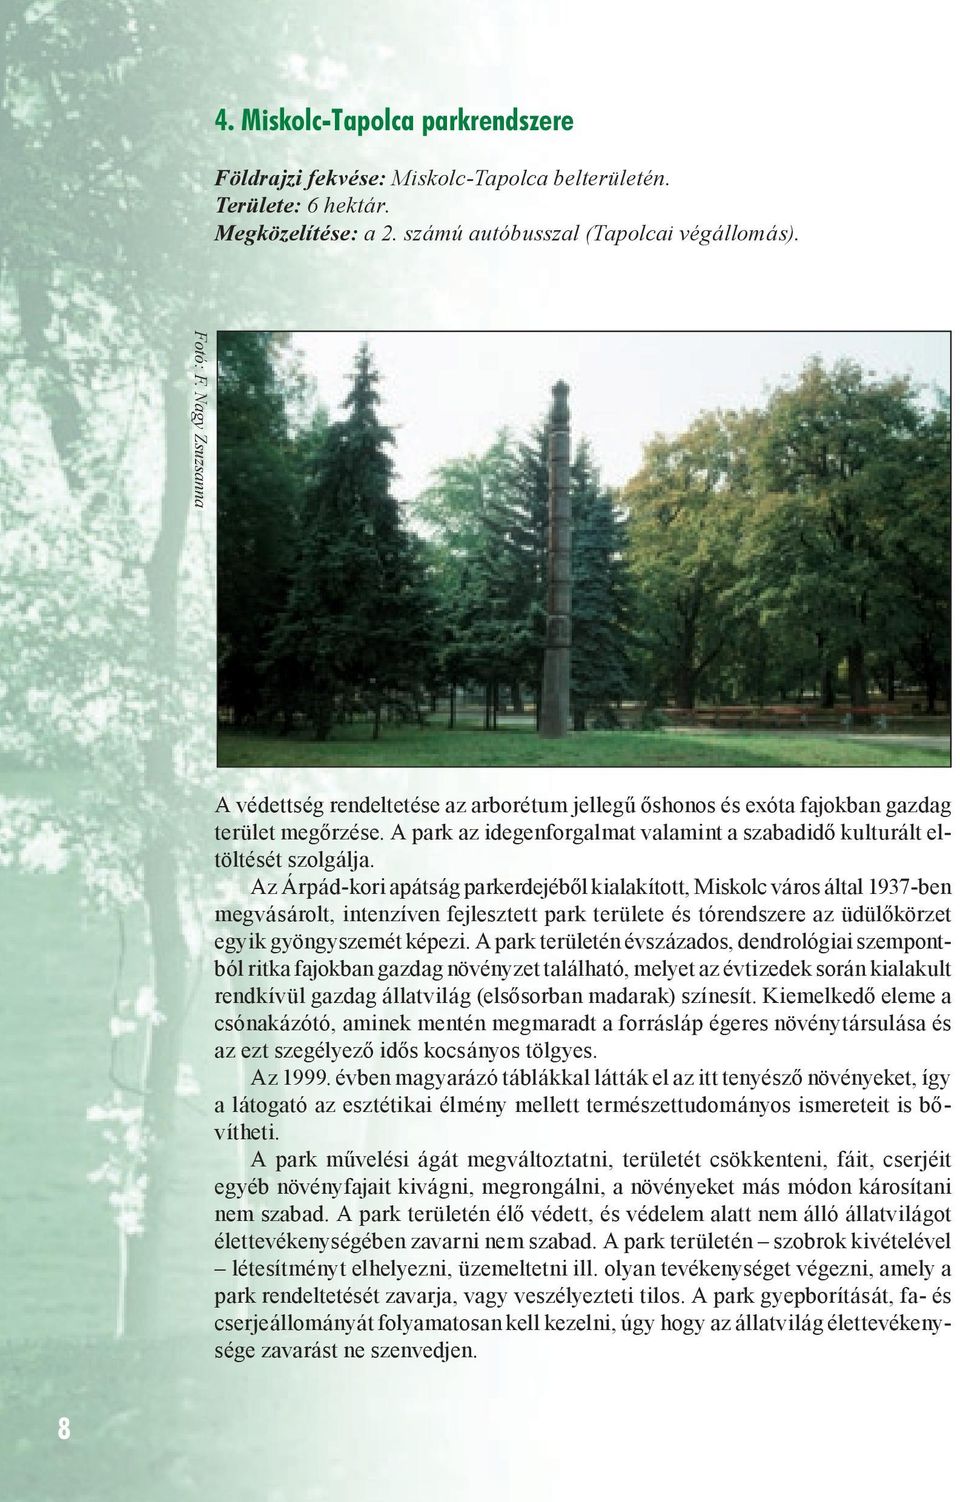 Az Árpád-kori apátság parkerdejéből kialakított, Miskolc város által 1937-ben megvásárolt, intenzíven fejlesztett park területe és tórendszere az üdülőkörzet egyik gyöngyszemét képezi.